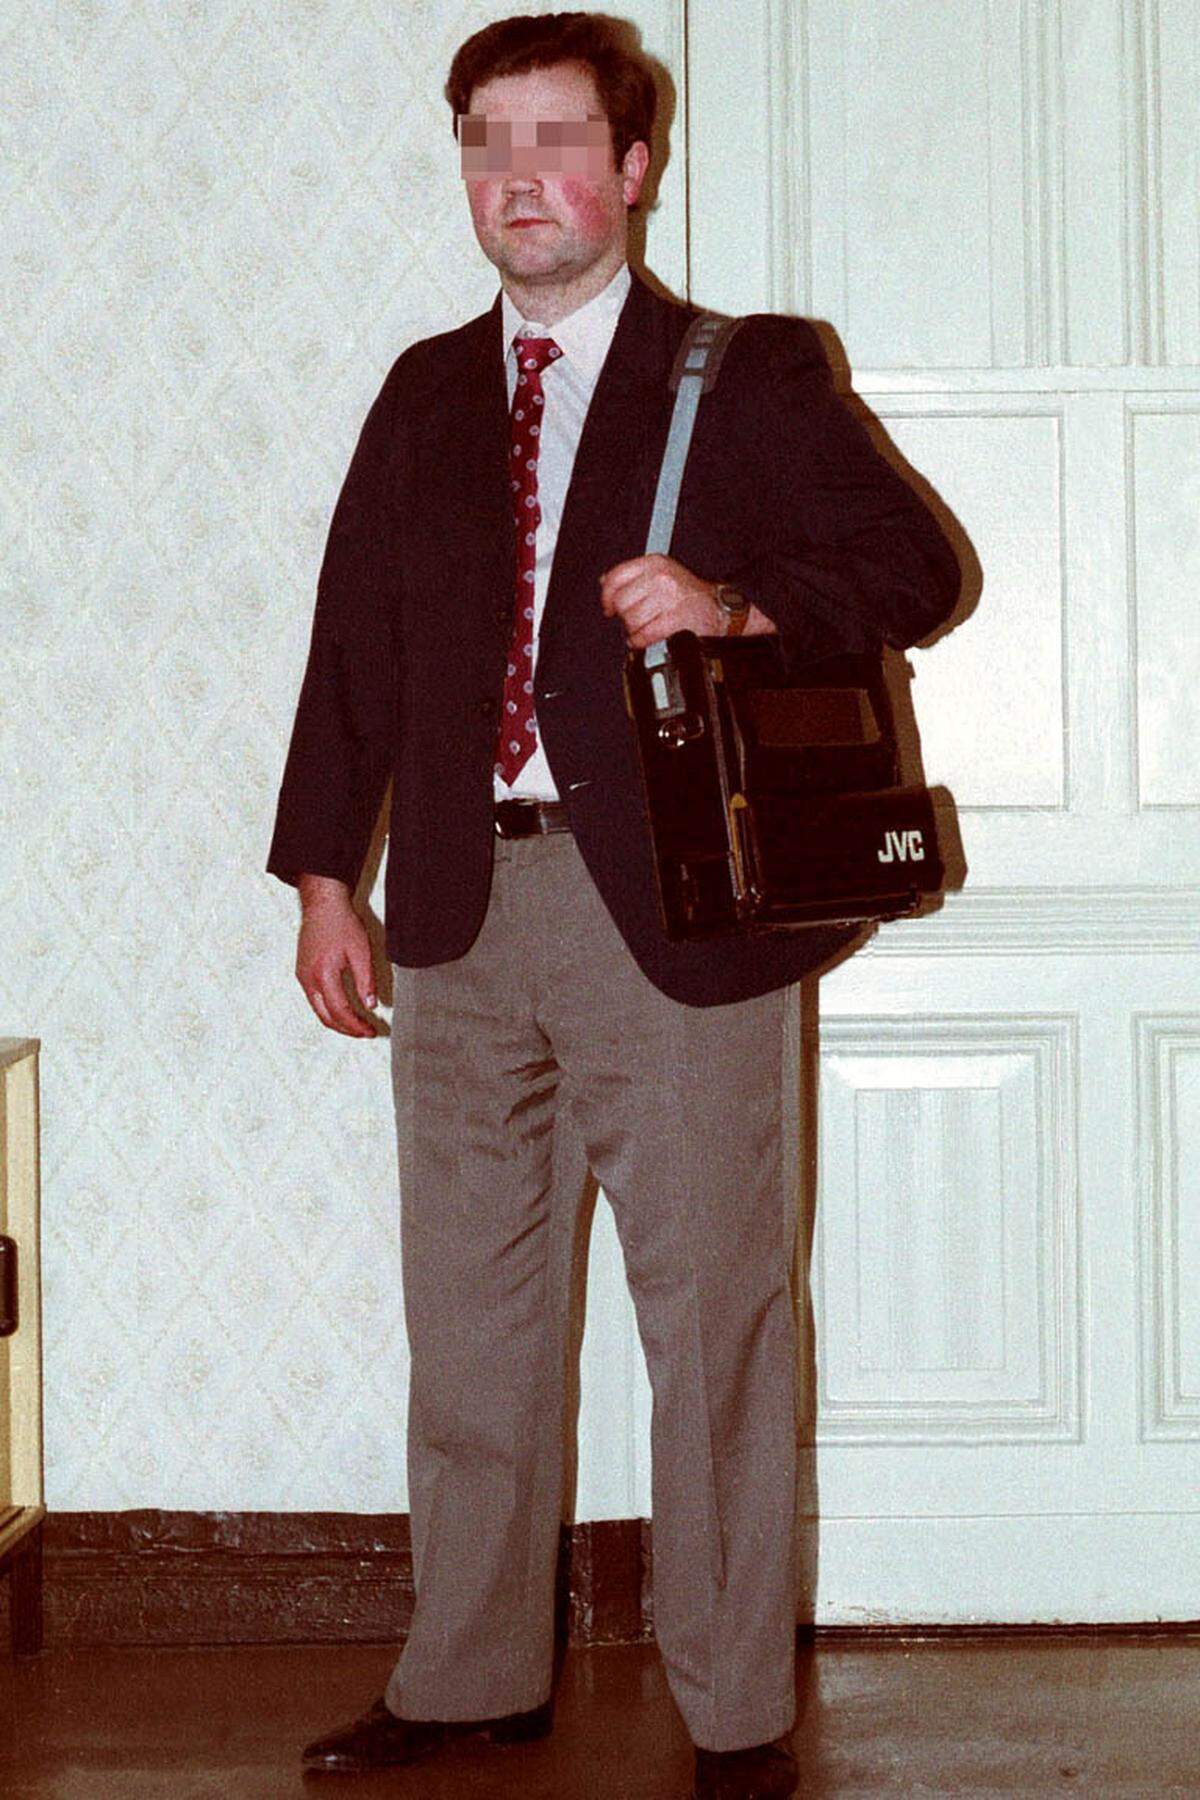 Bieder und richtig westlich posiert dieser KGB-Beamte. Täuschen will er auch mit einer Fototasche des japanischen Elektronikkonzerns JVC.